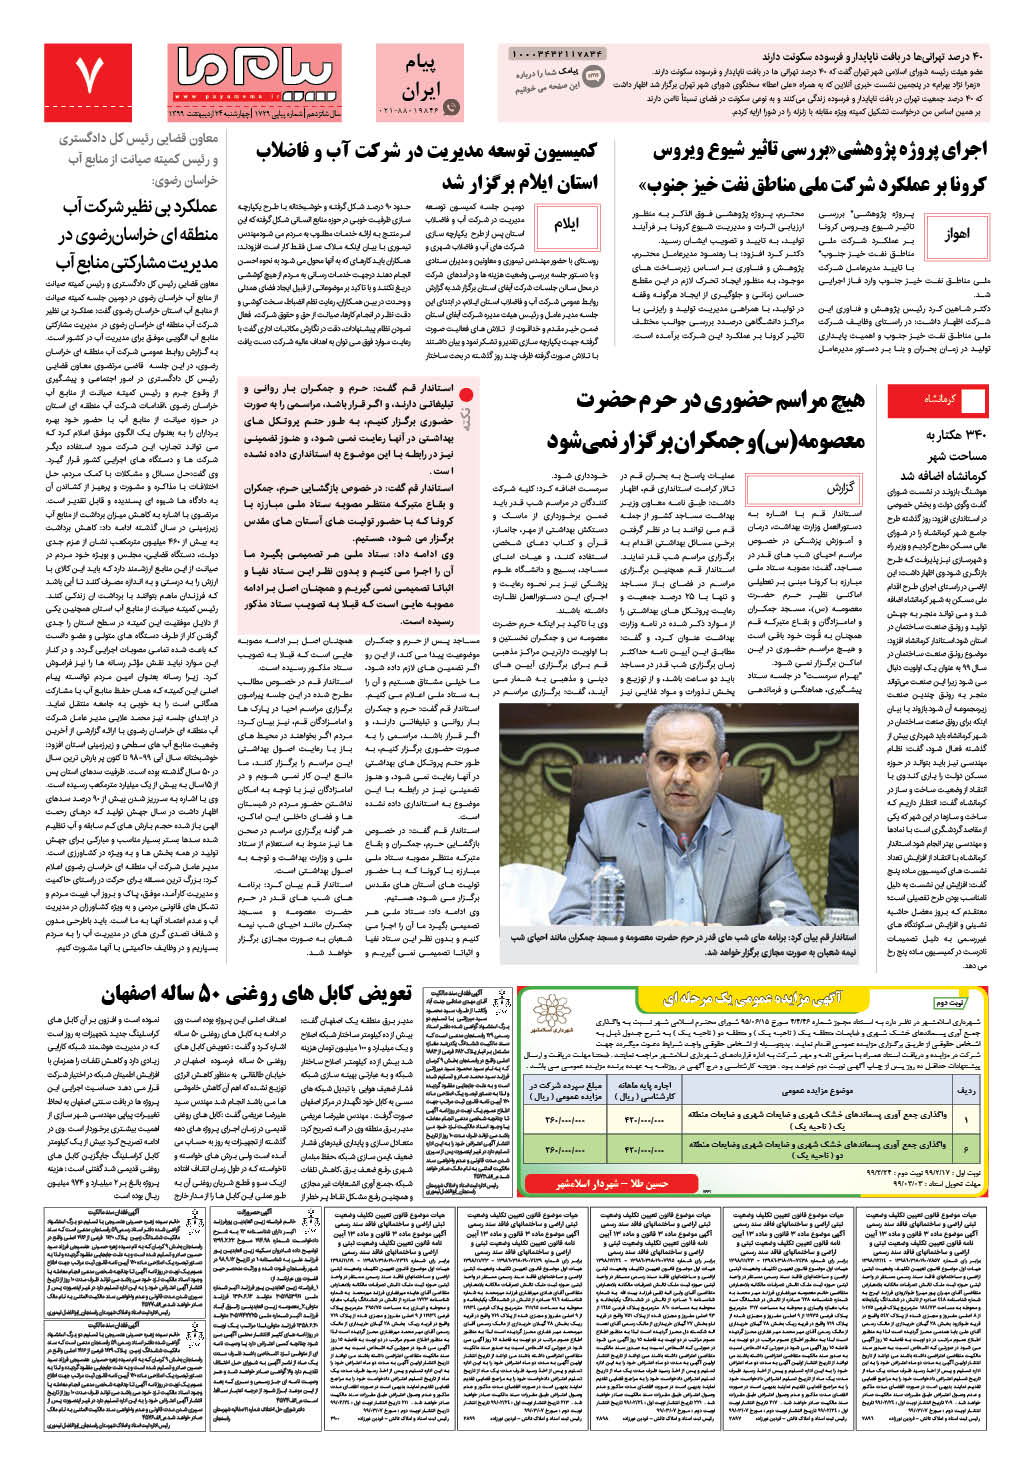 صفحه پیام ایران شماره 1729 روزنامه پیام ما